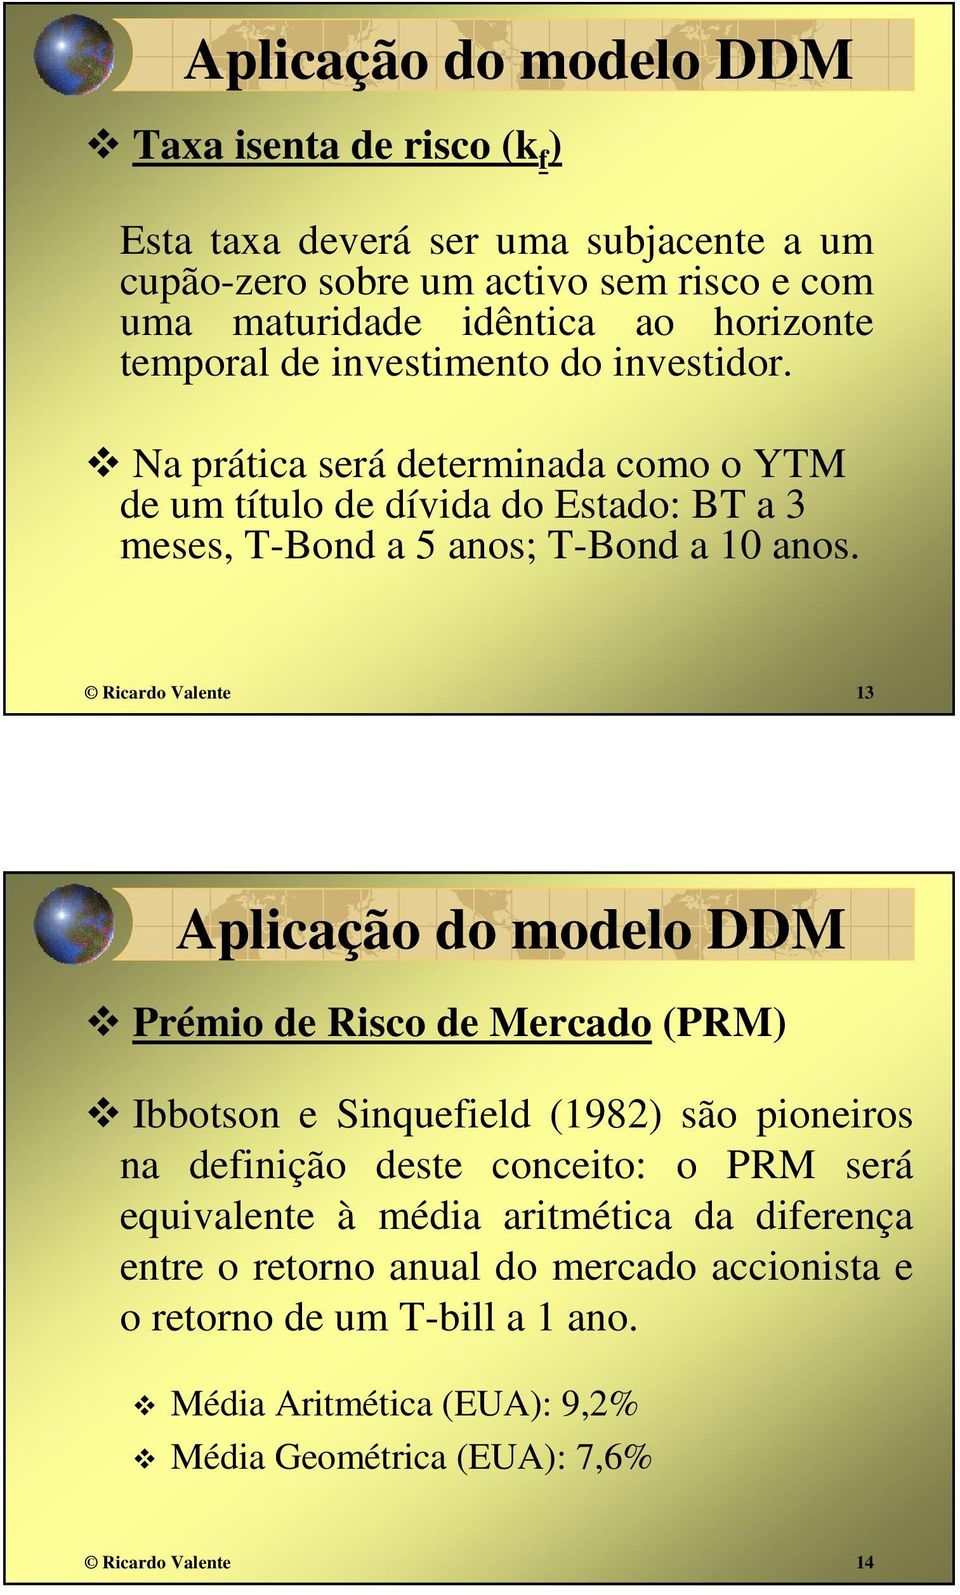 Ricardo Valente 13 Aplicação do modelo DDM Prémio de Risco de Mercado (PRM) Ibbotson e Sinquefield (1982) são pioneiros na definição deste conceito: o PRM será equivalente à